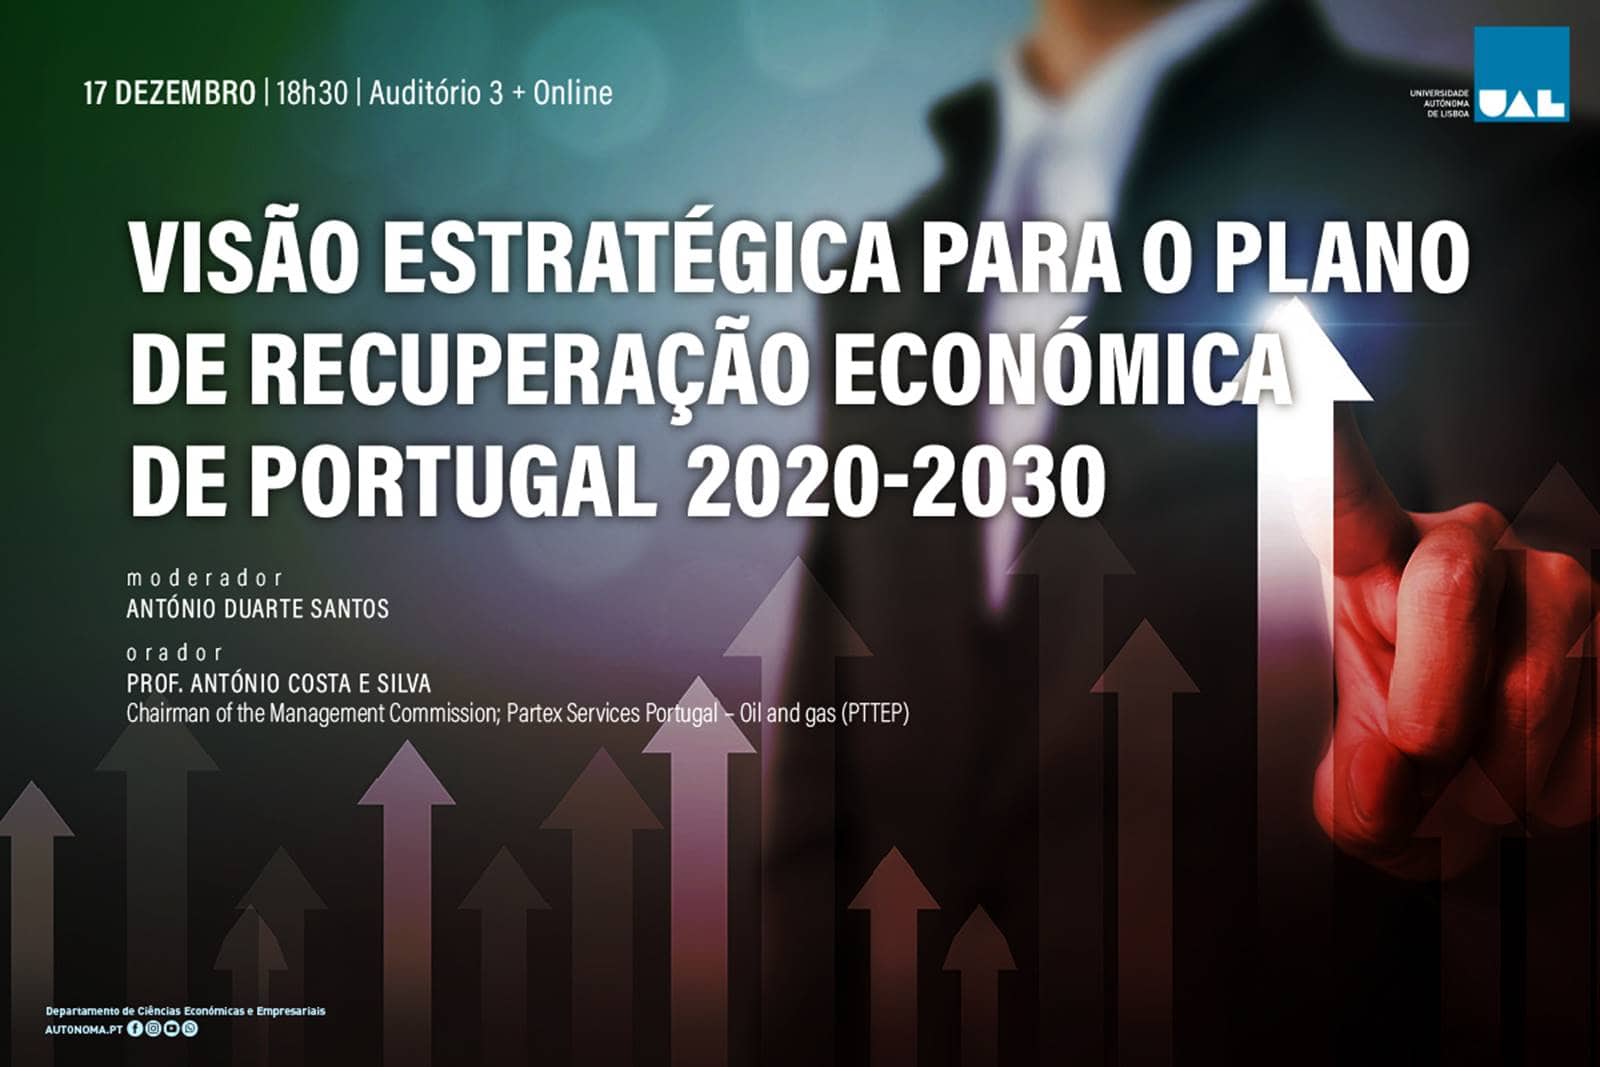 Visão Estratégica para o Plano de Recuperação Económica de Portugal 2020-2030